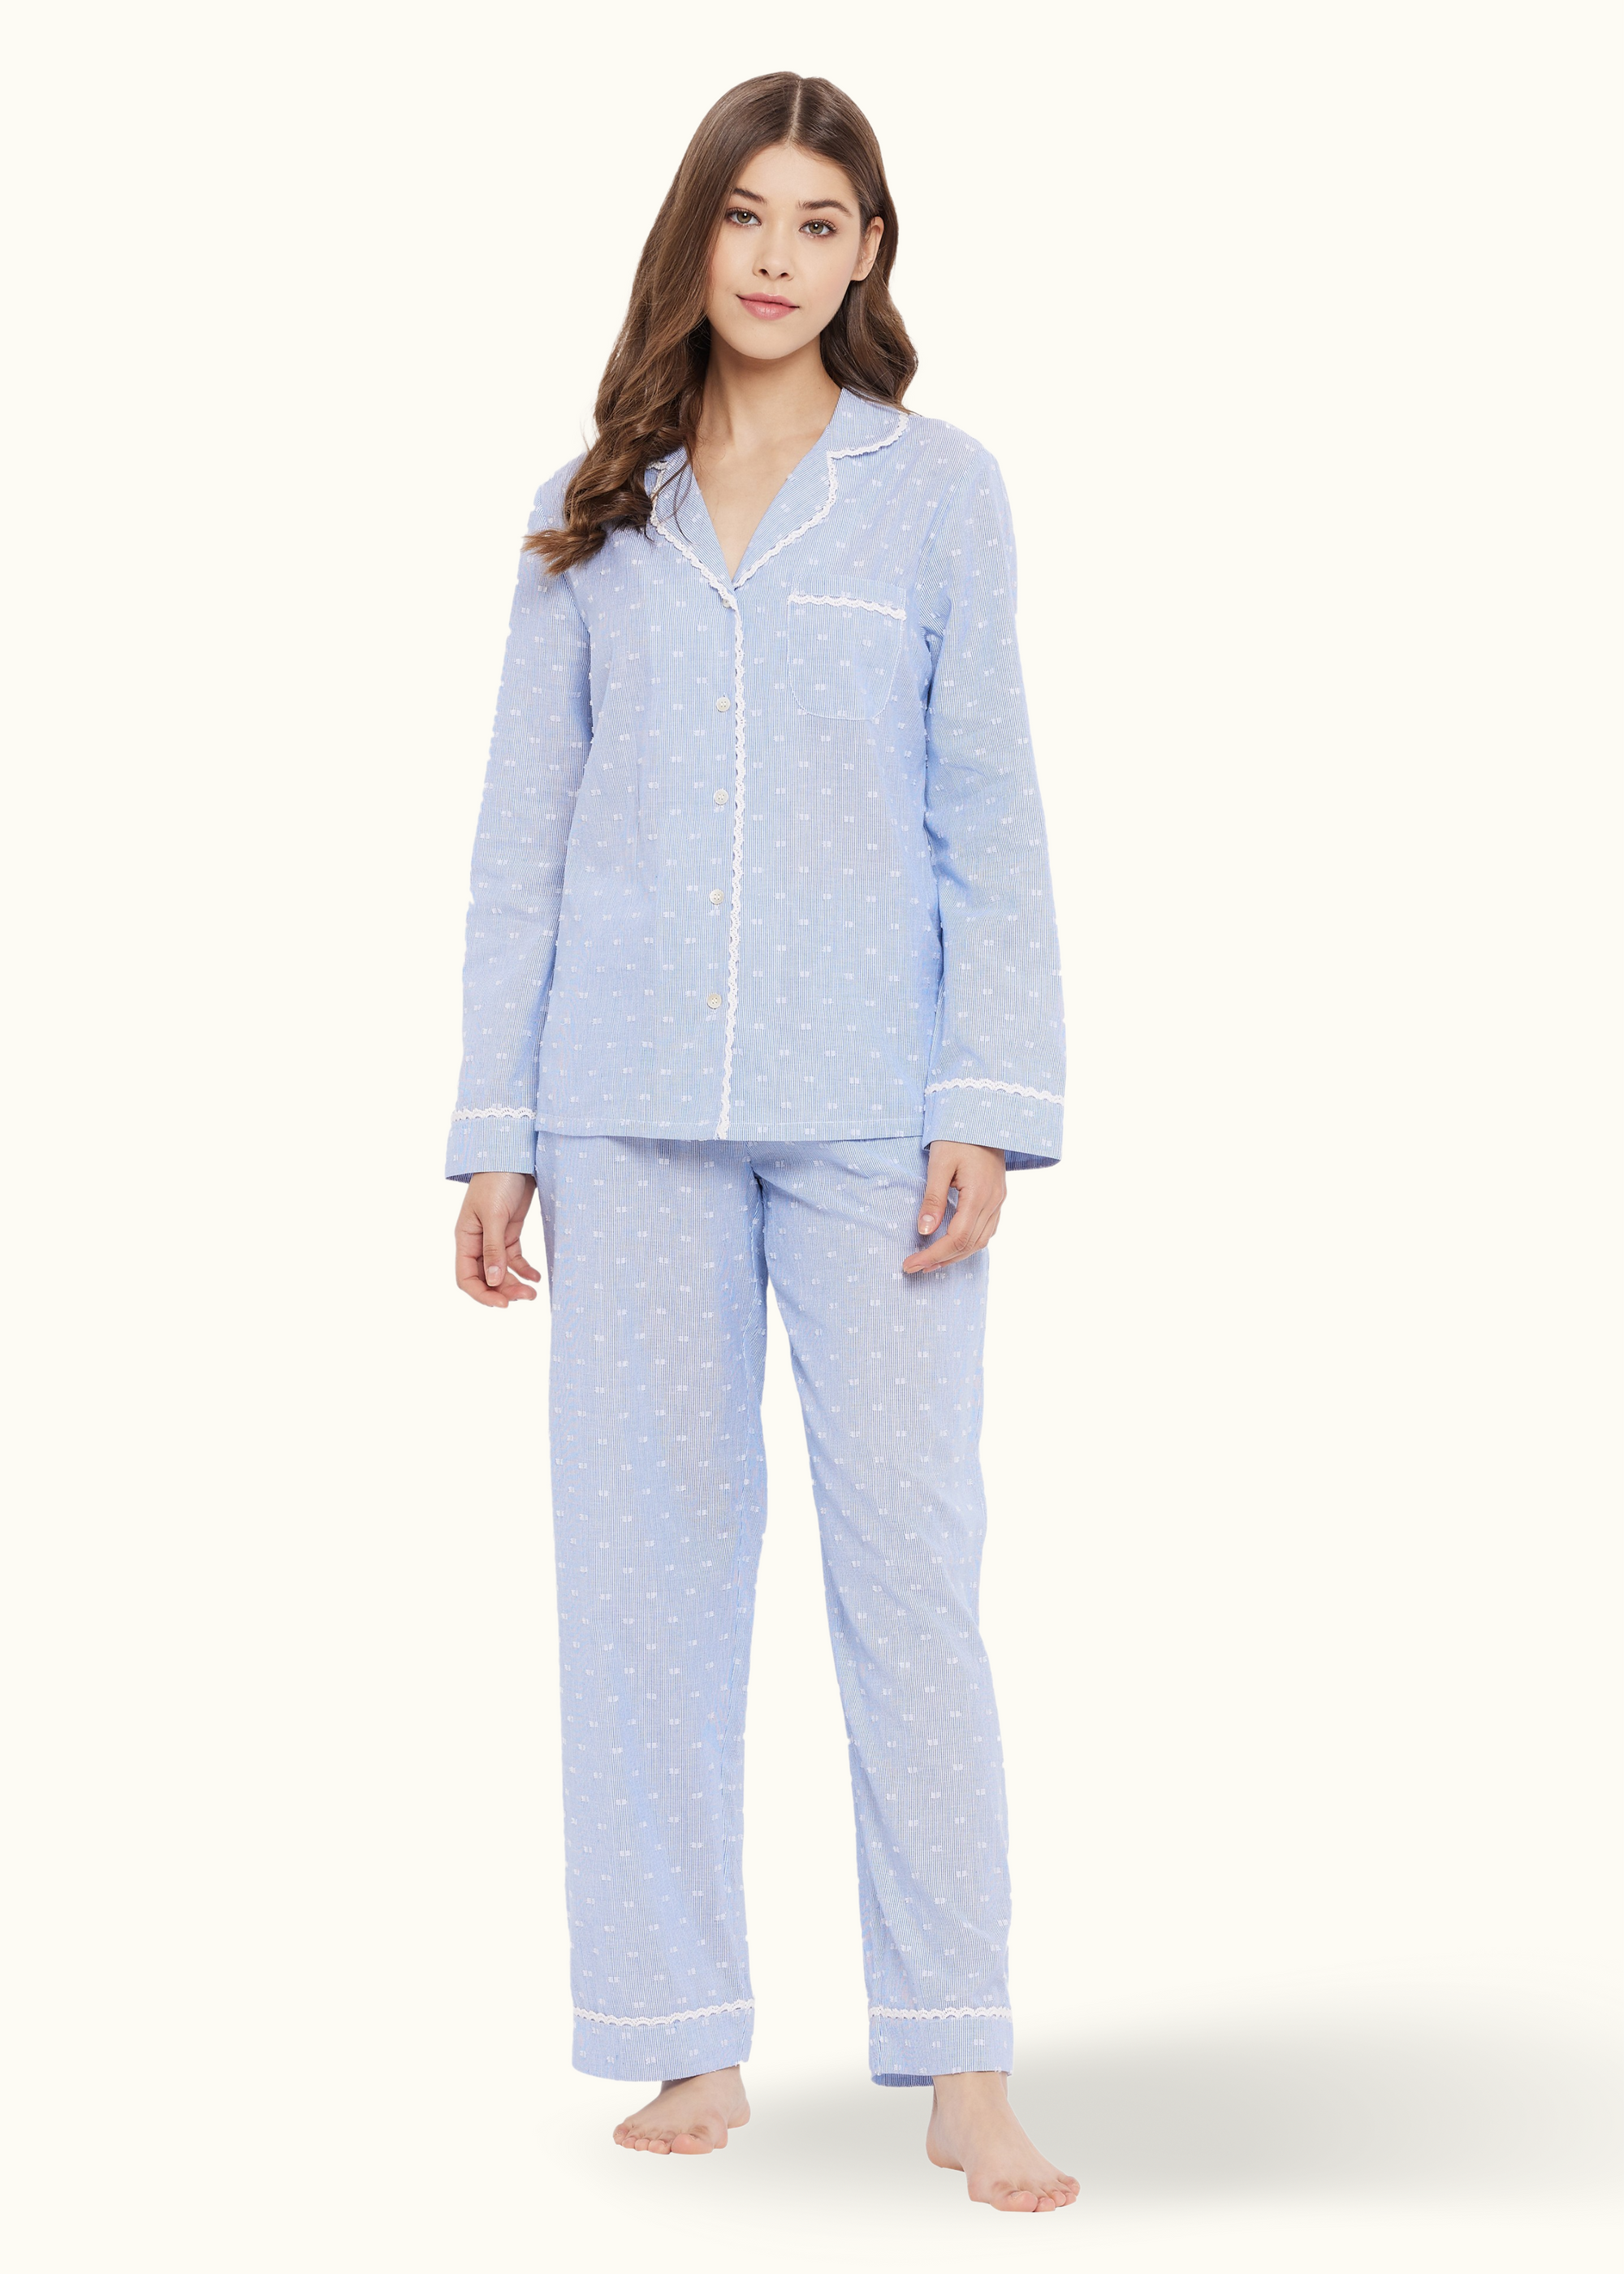 Amy Cotton Lace Sleep Pyjamas Set Pajamas 29.00 Indigo Paisley